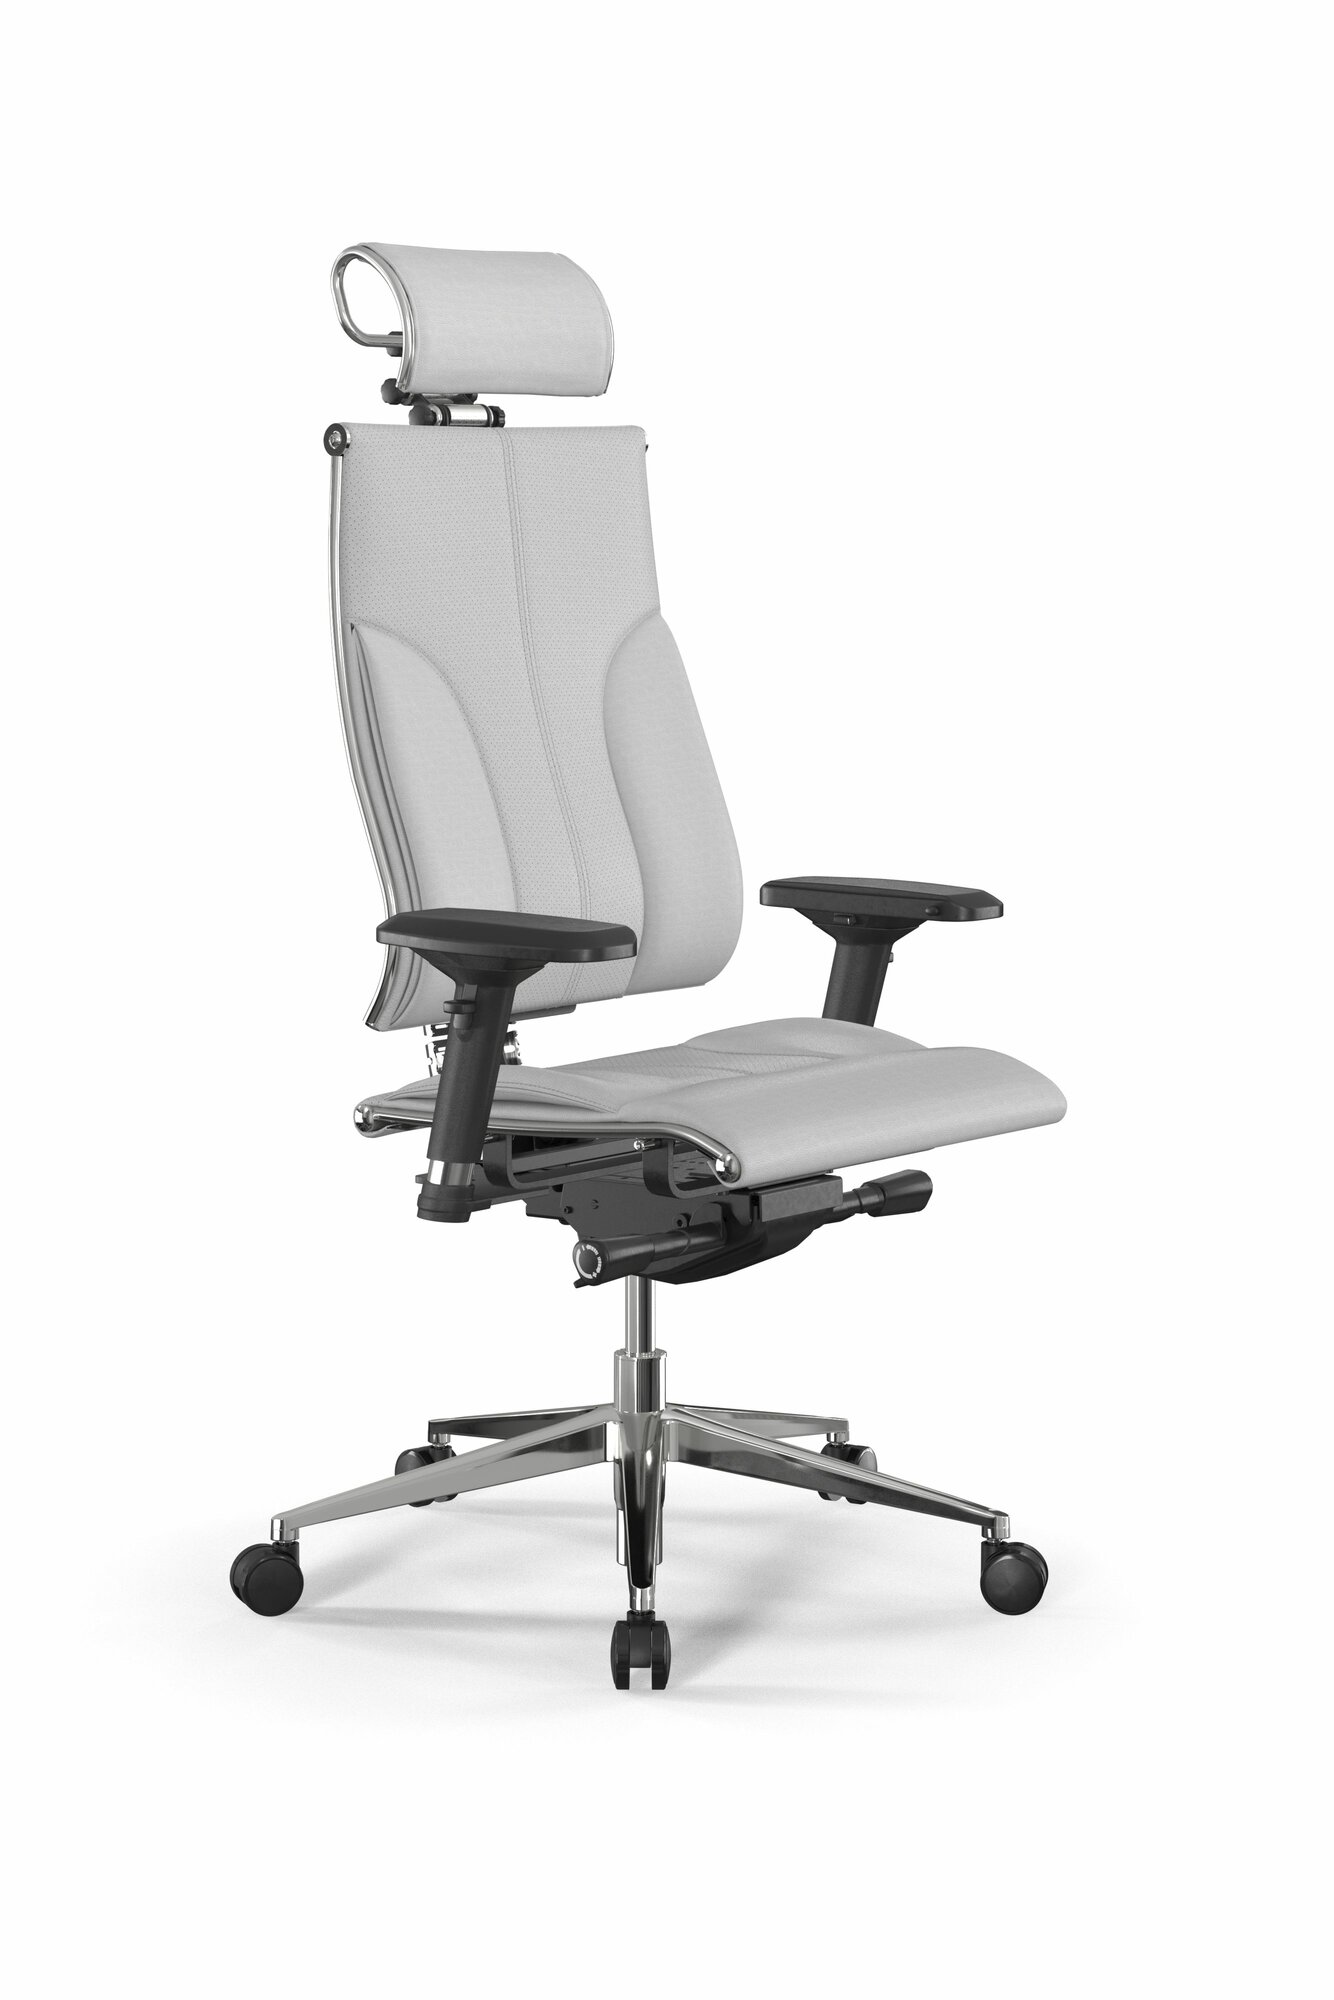 Позвоночное кресло метта Y 3DE B2-10D - Infinity /Kc06/Nc06/D04P/H2cL-3D(M26. B32. G25. W03) (Белый)